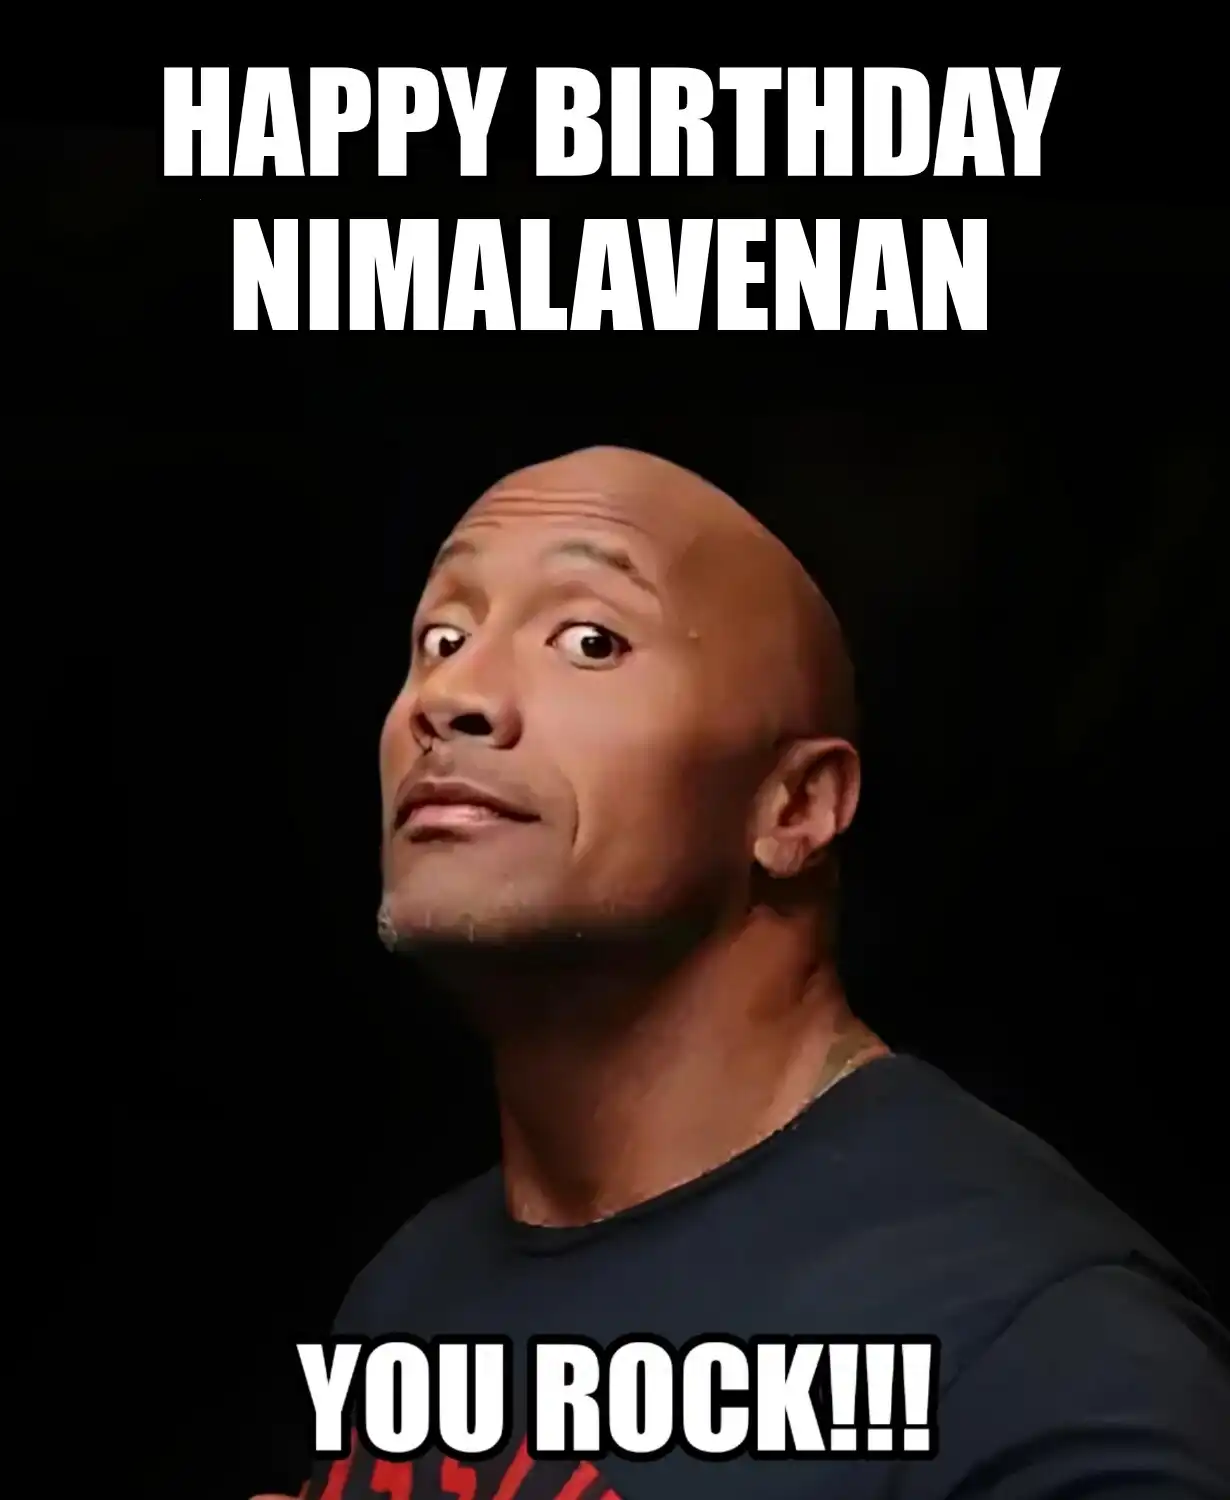 Happy Birthday Nimalavenan You Rock Meme